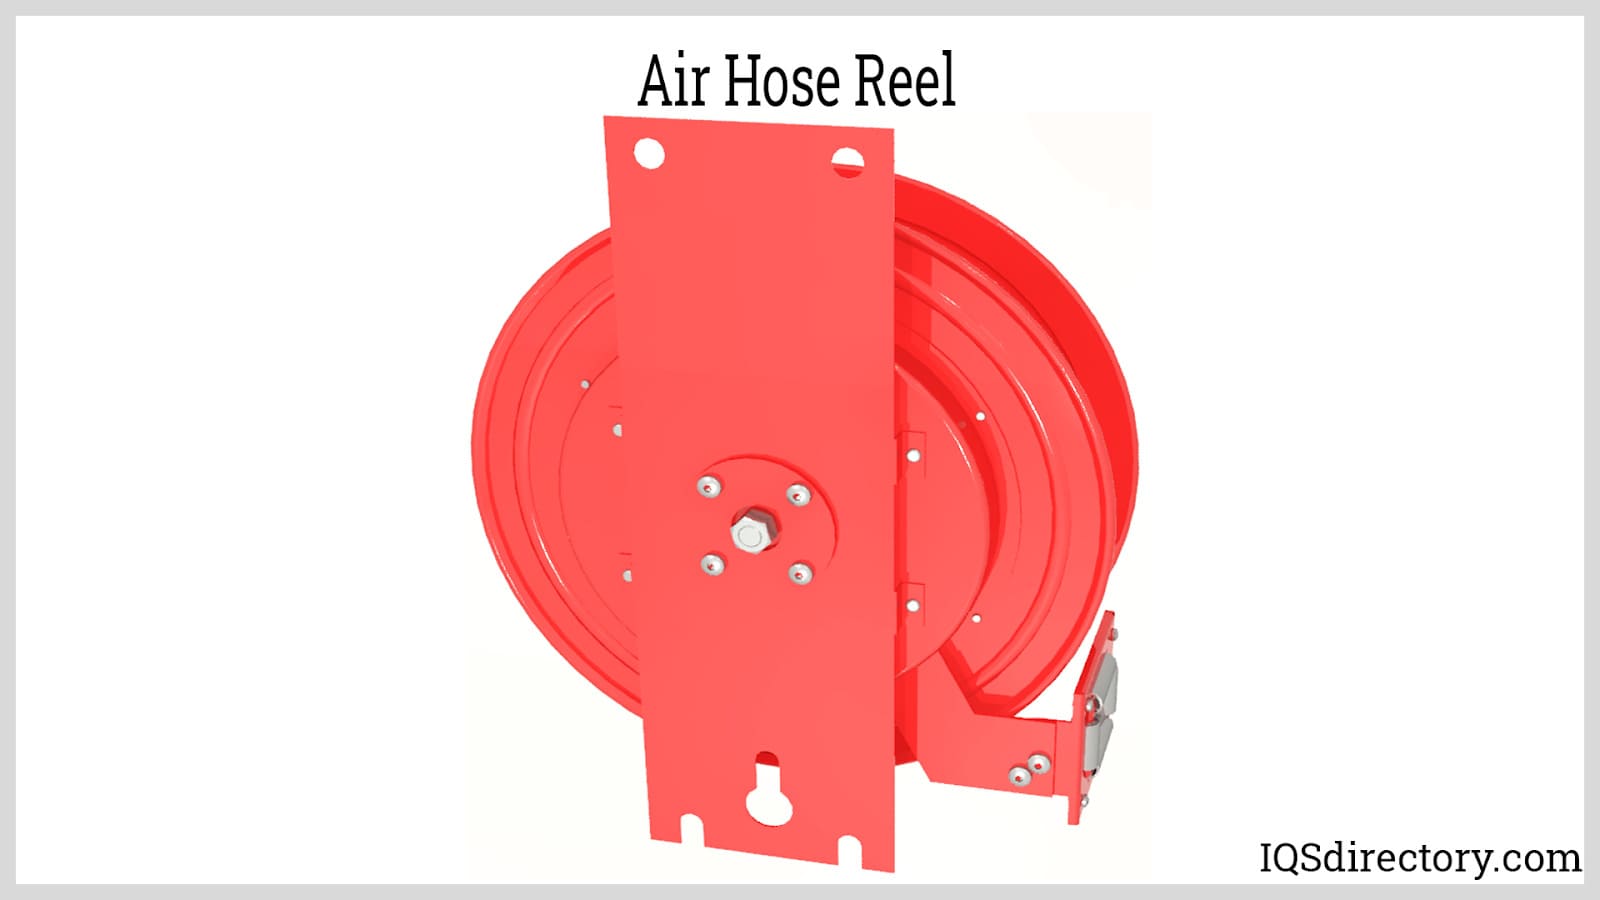 Air Hose Reels